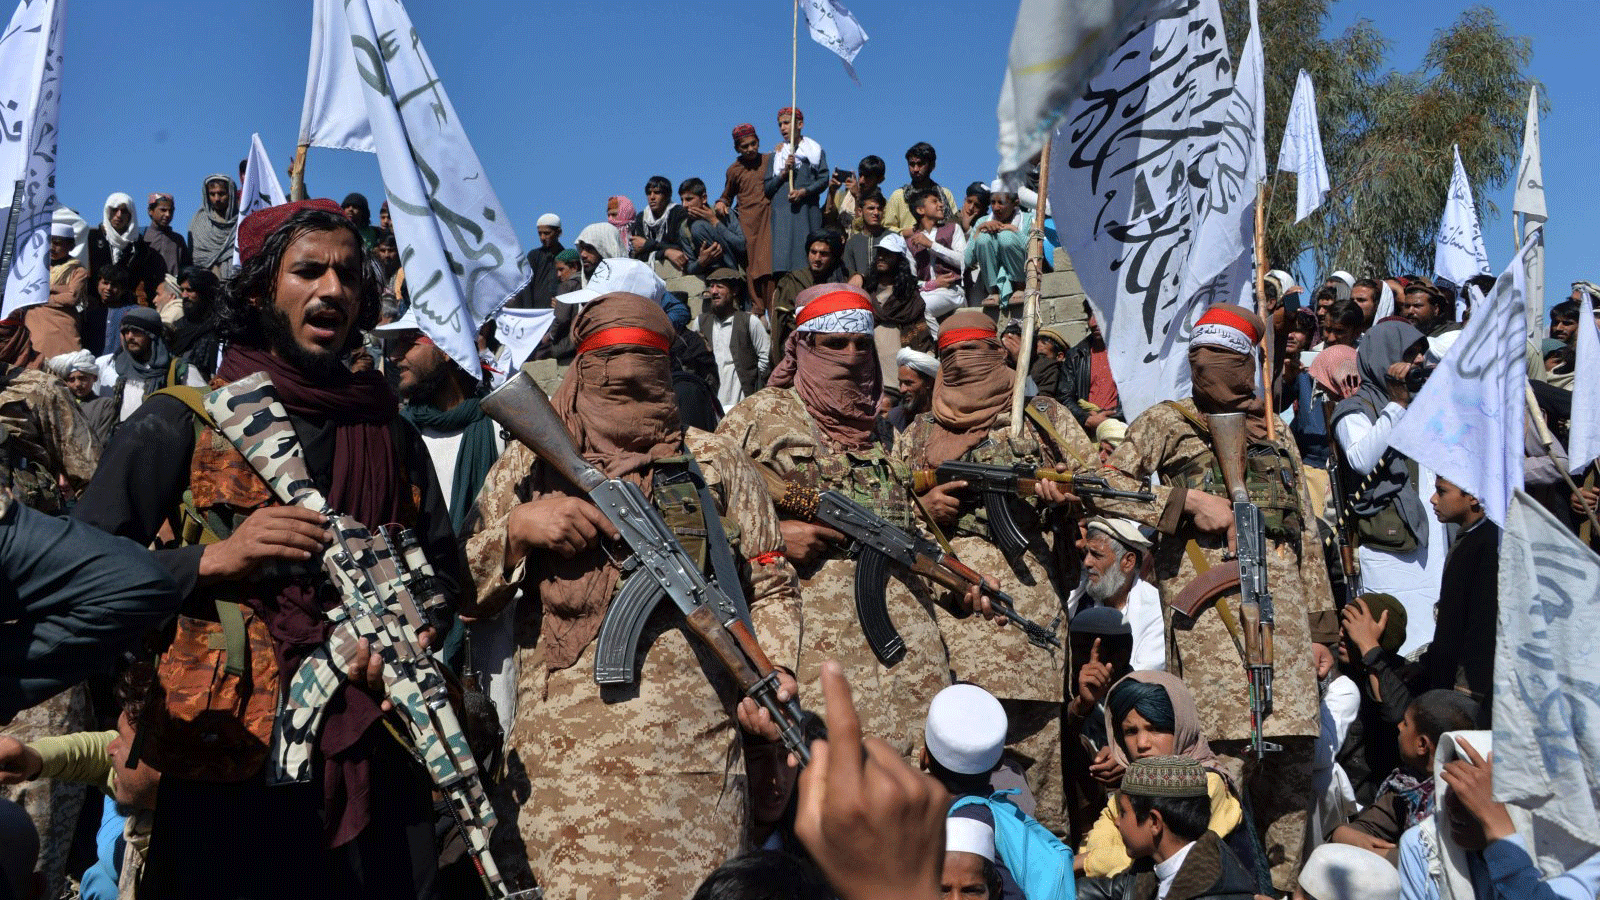 مقاتلو طالبان والقرويون الأفغان يحتفلون باتفاق السلام وانتصارهم في الصراع الأفغاني. في منطقة ألينجار في ولاية لغمان/ أفغانستان. 2 آذار/مارس 2020